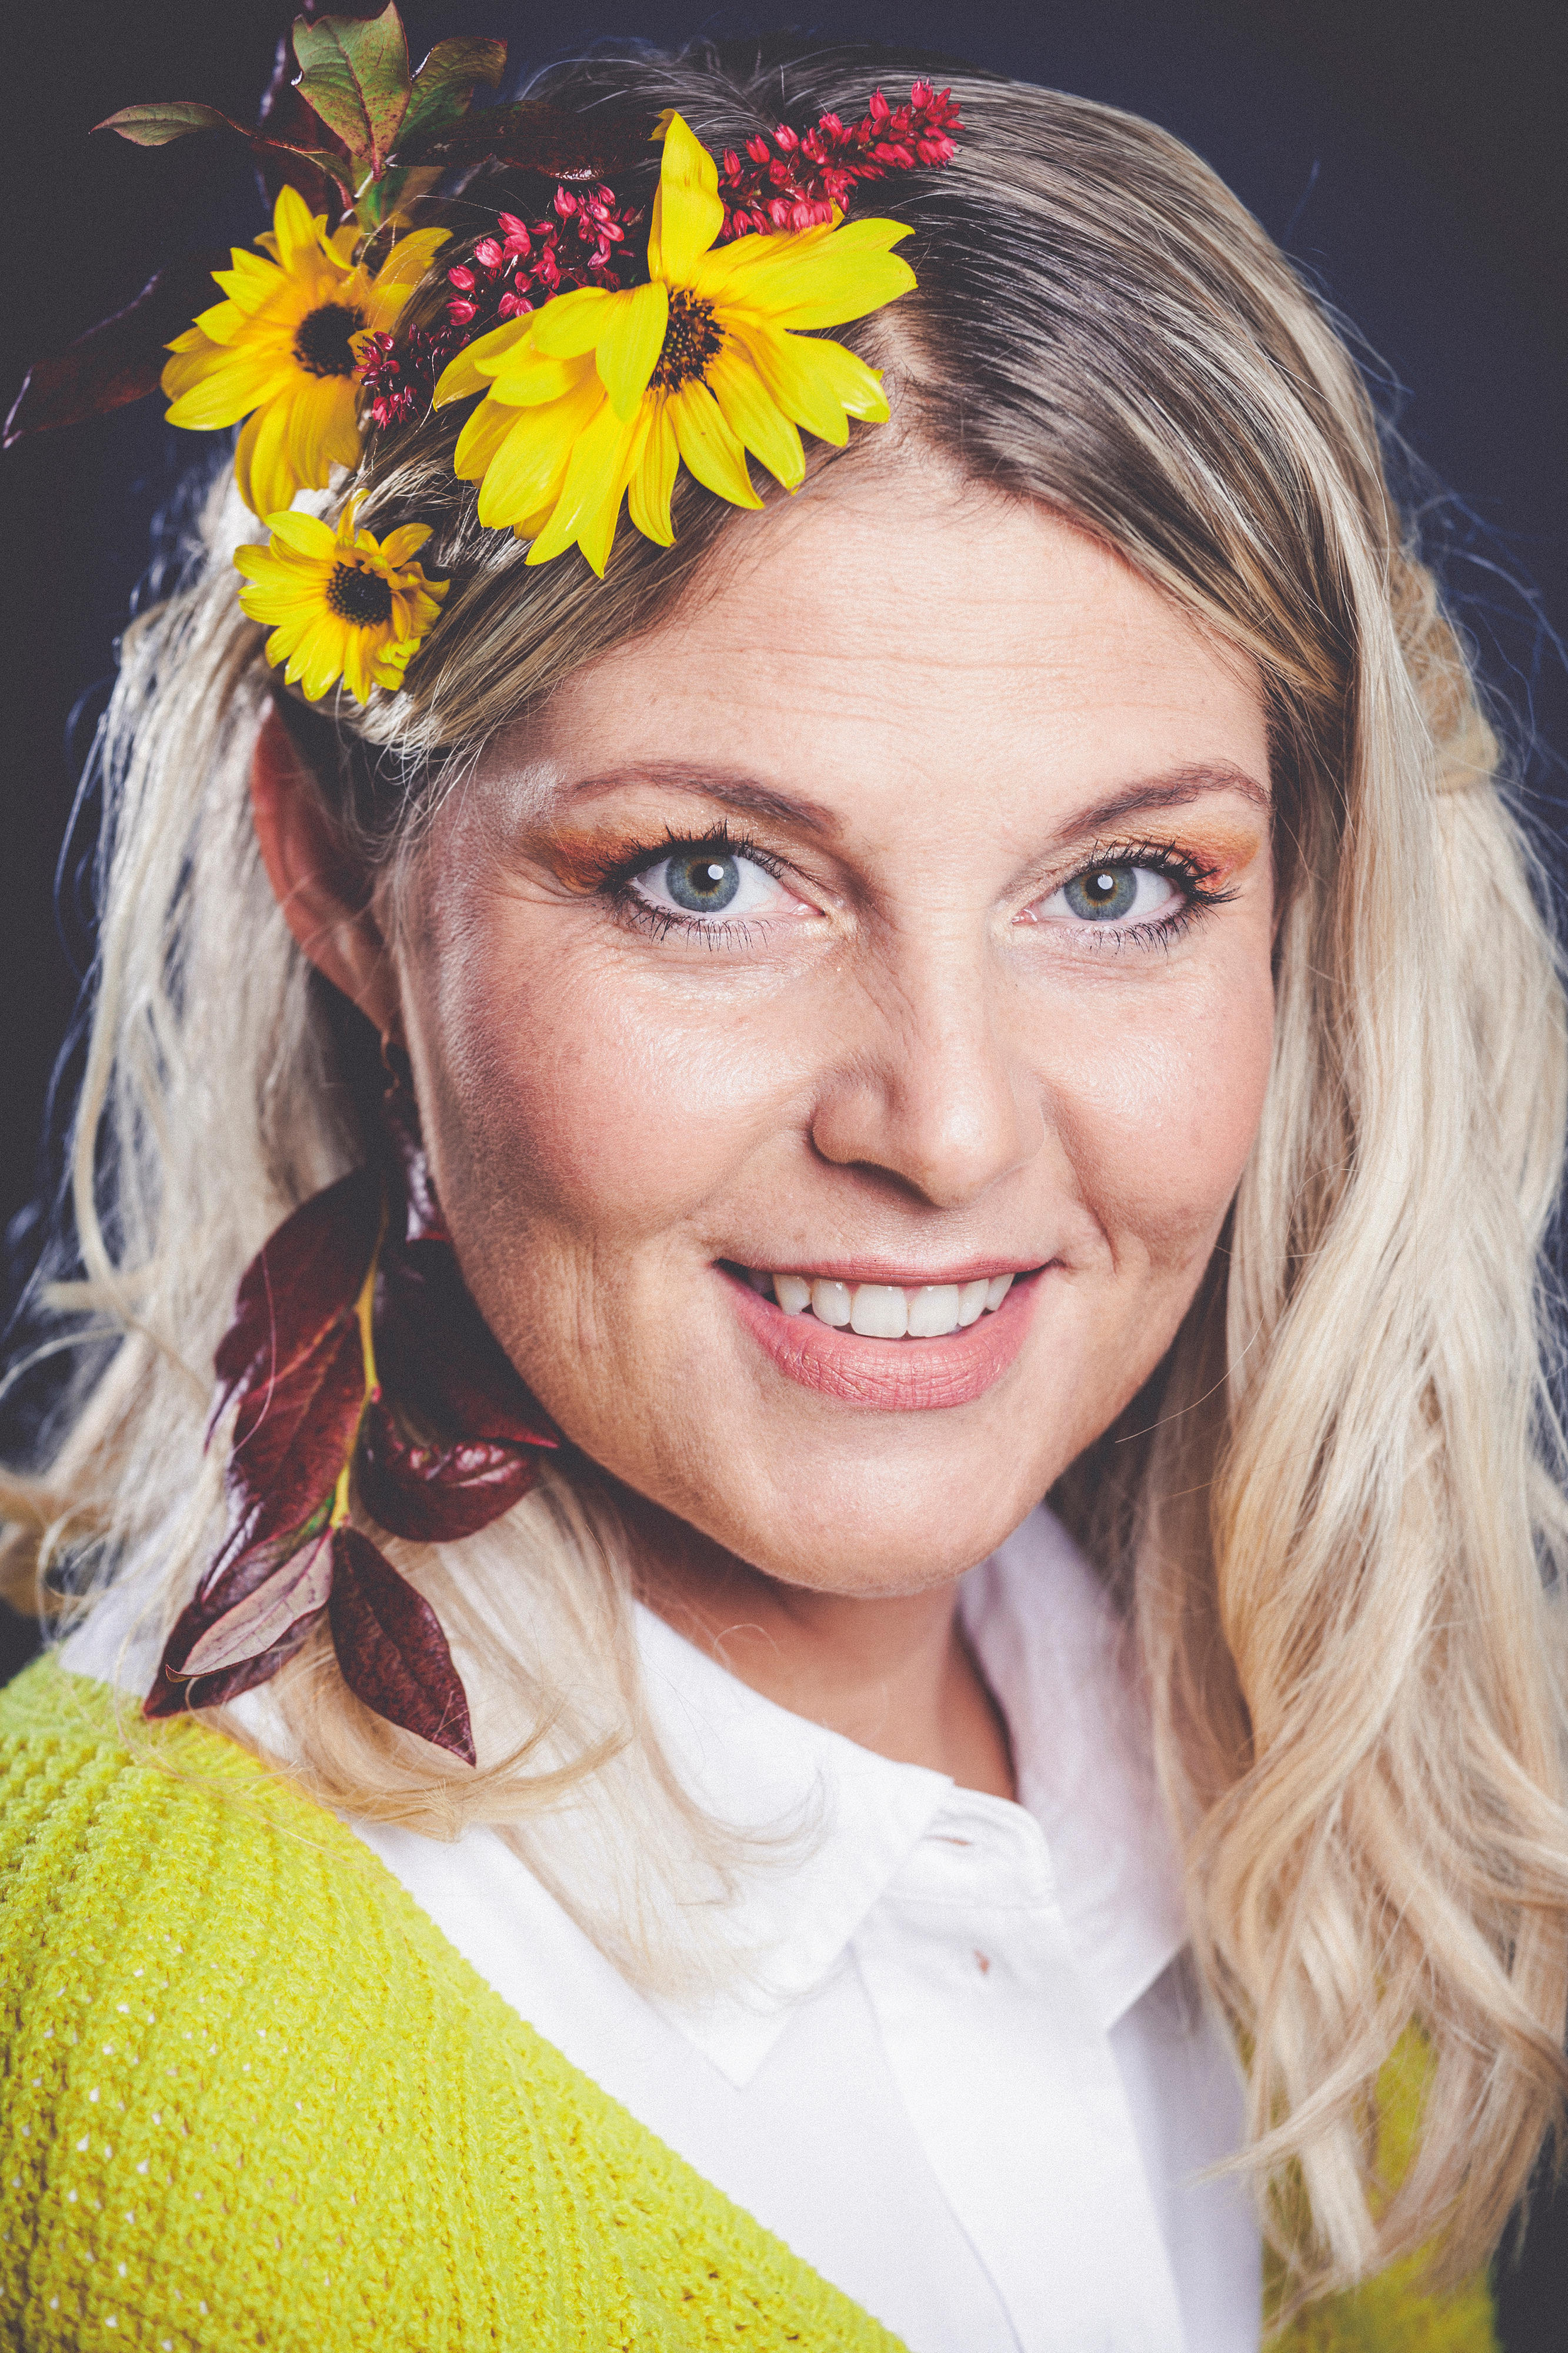 Porträt einer blonden, lächelnden Frau mit gelben und roten Blumen im Haar